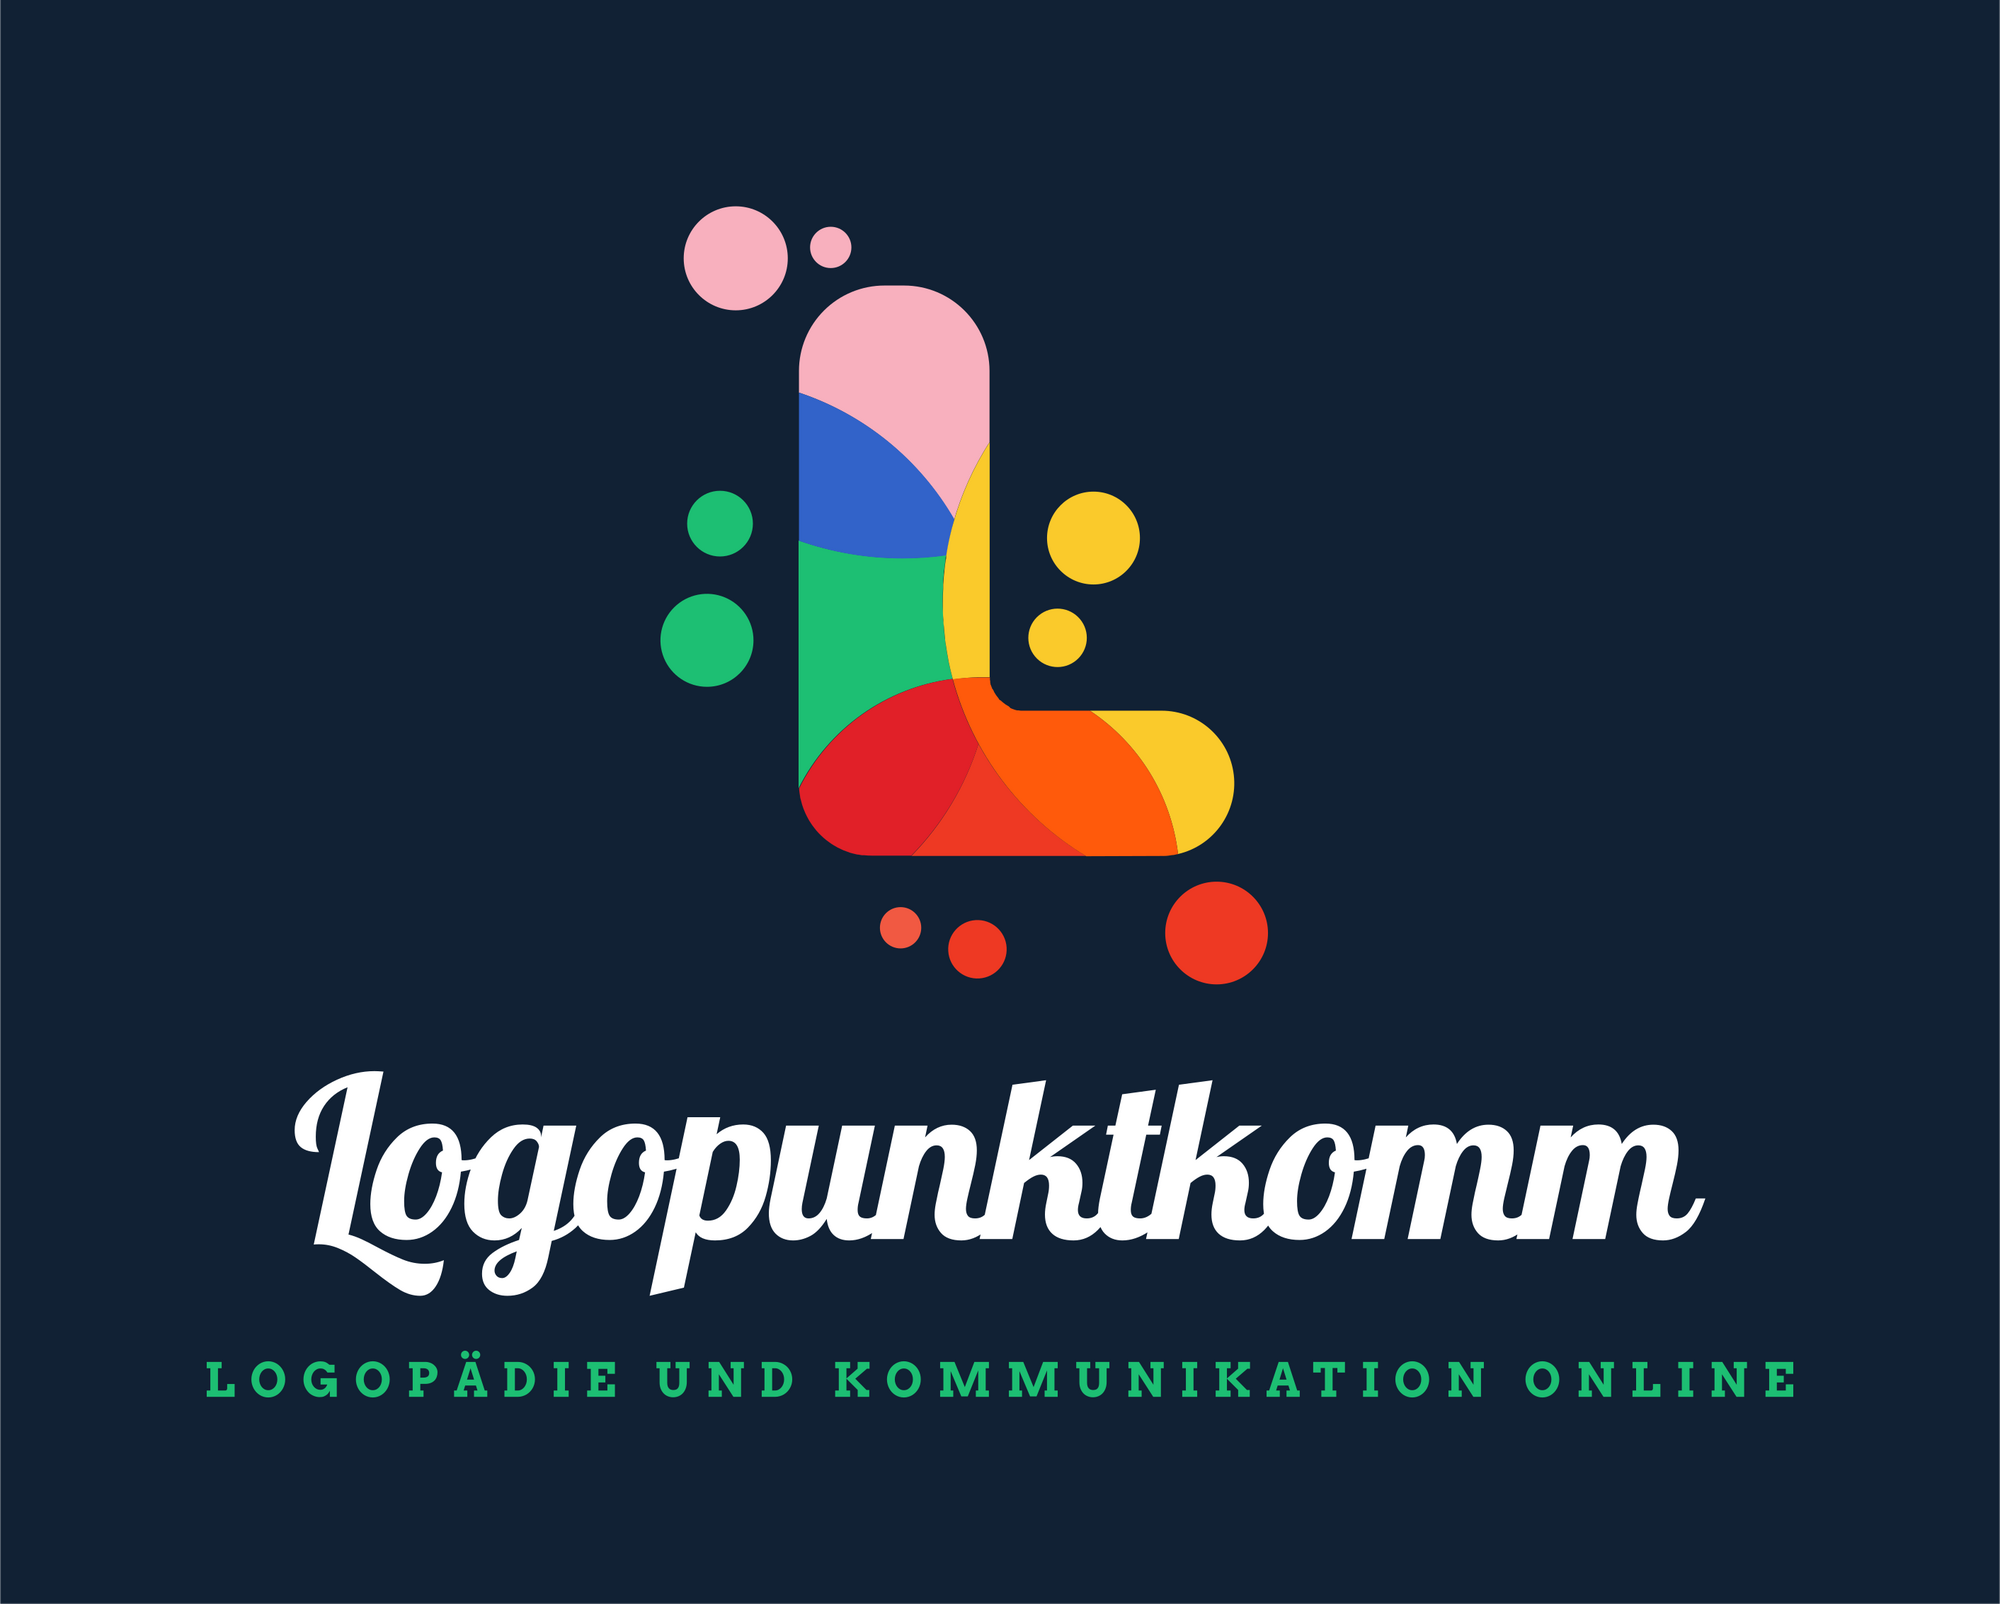 Bild 3 Logopunktkomm - Logopädie digital, innovativ und unkompliziert in Stuttgart